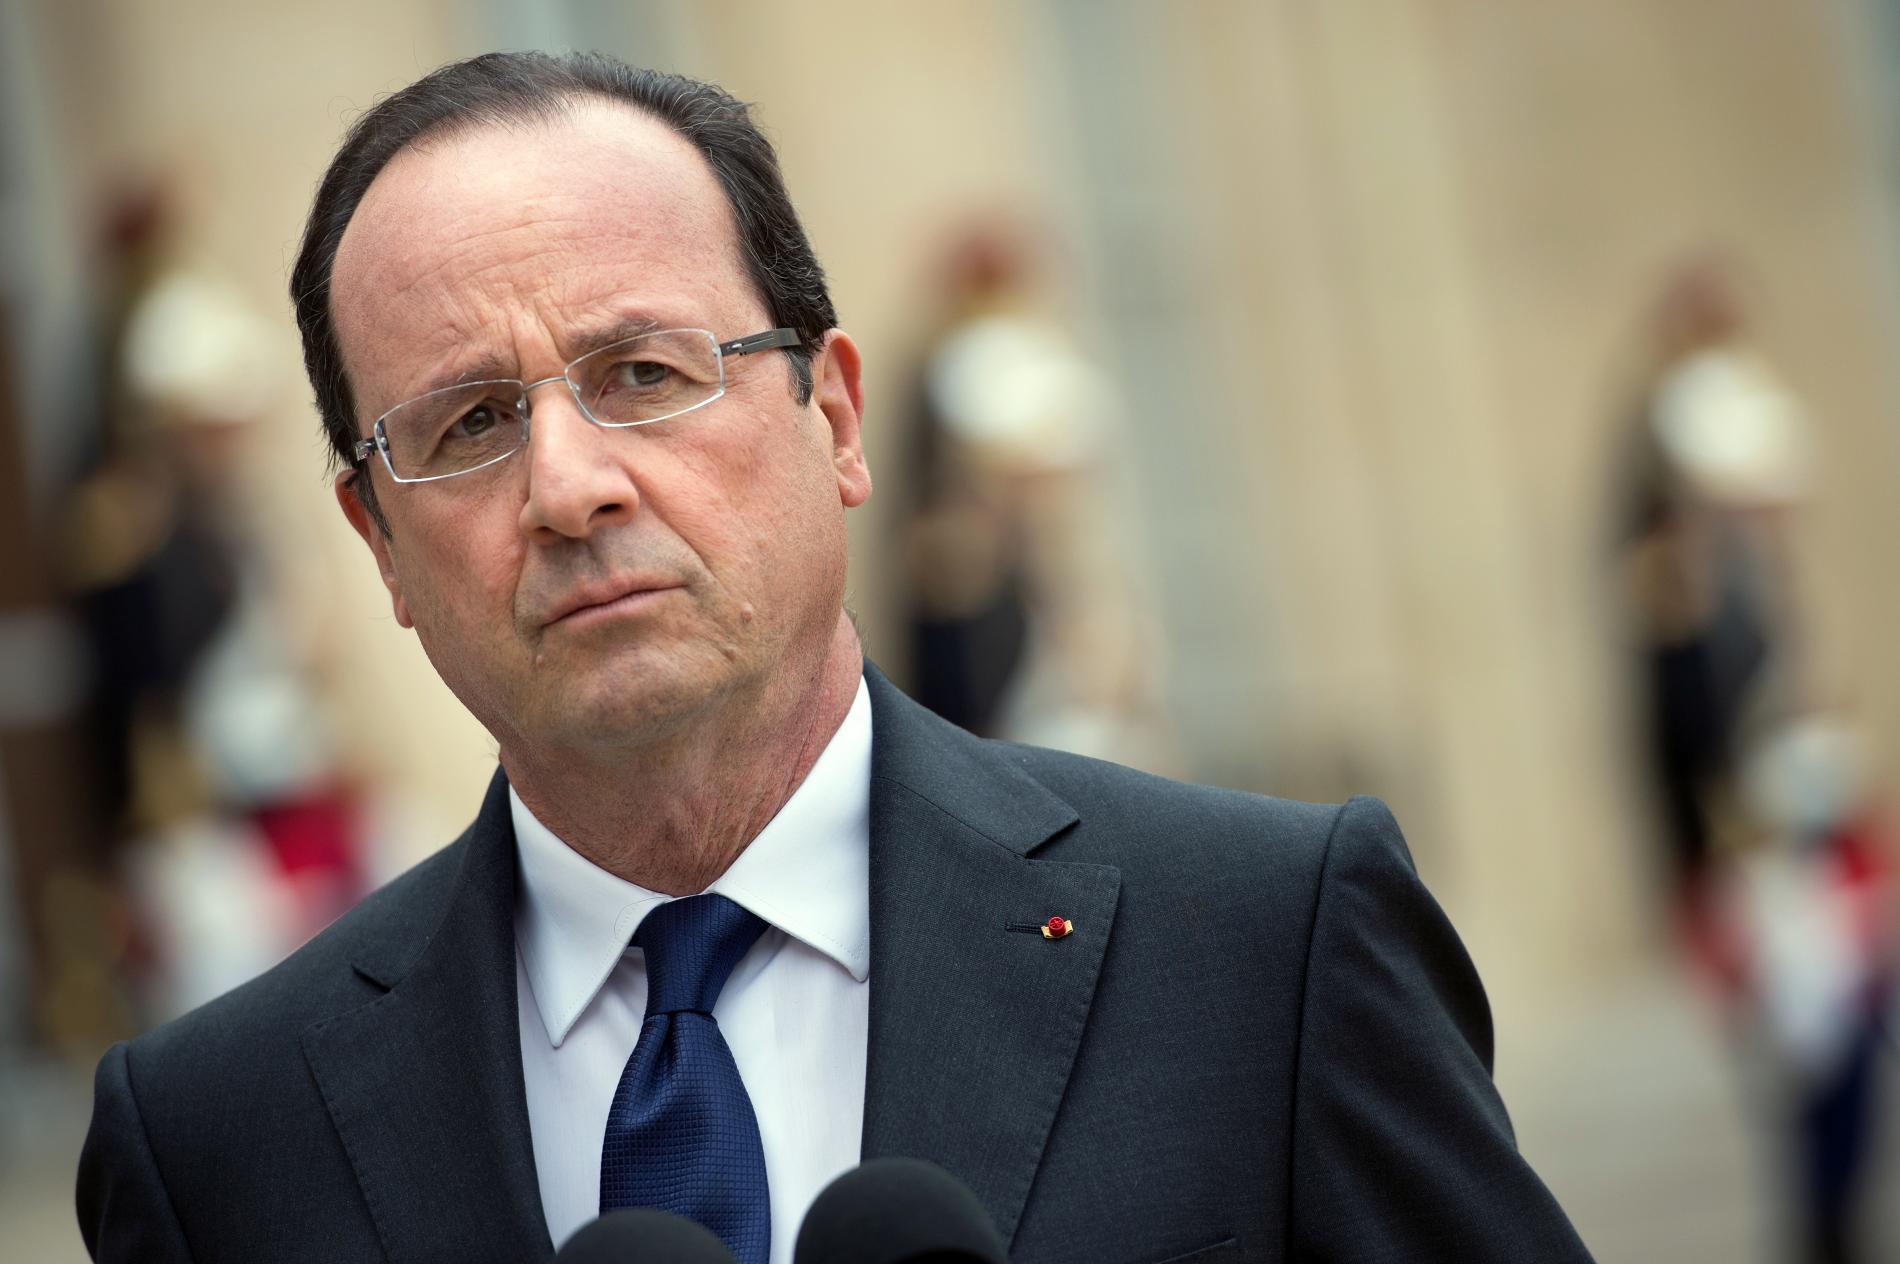 Mayotte- Expulsions d’étrangers : &laquo;&nbsp;Une situation extrêmement préoccupante&nbsp;&raquo; pour François Hollande